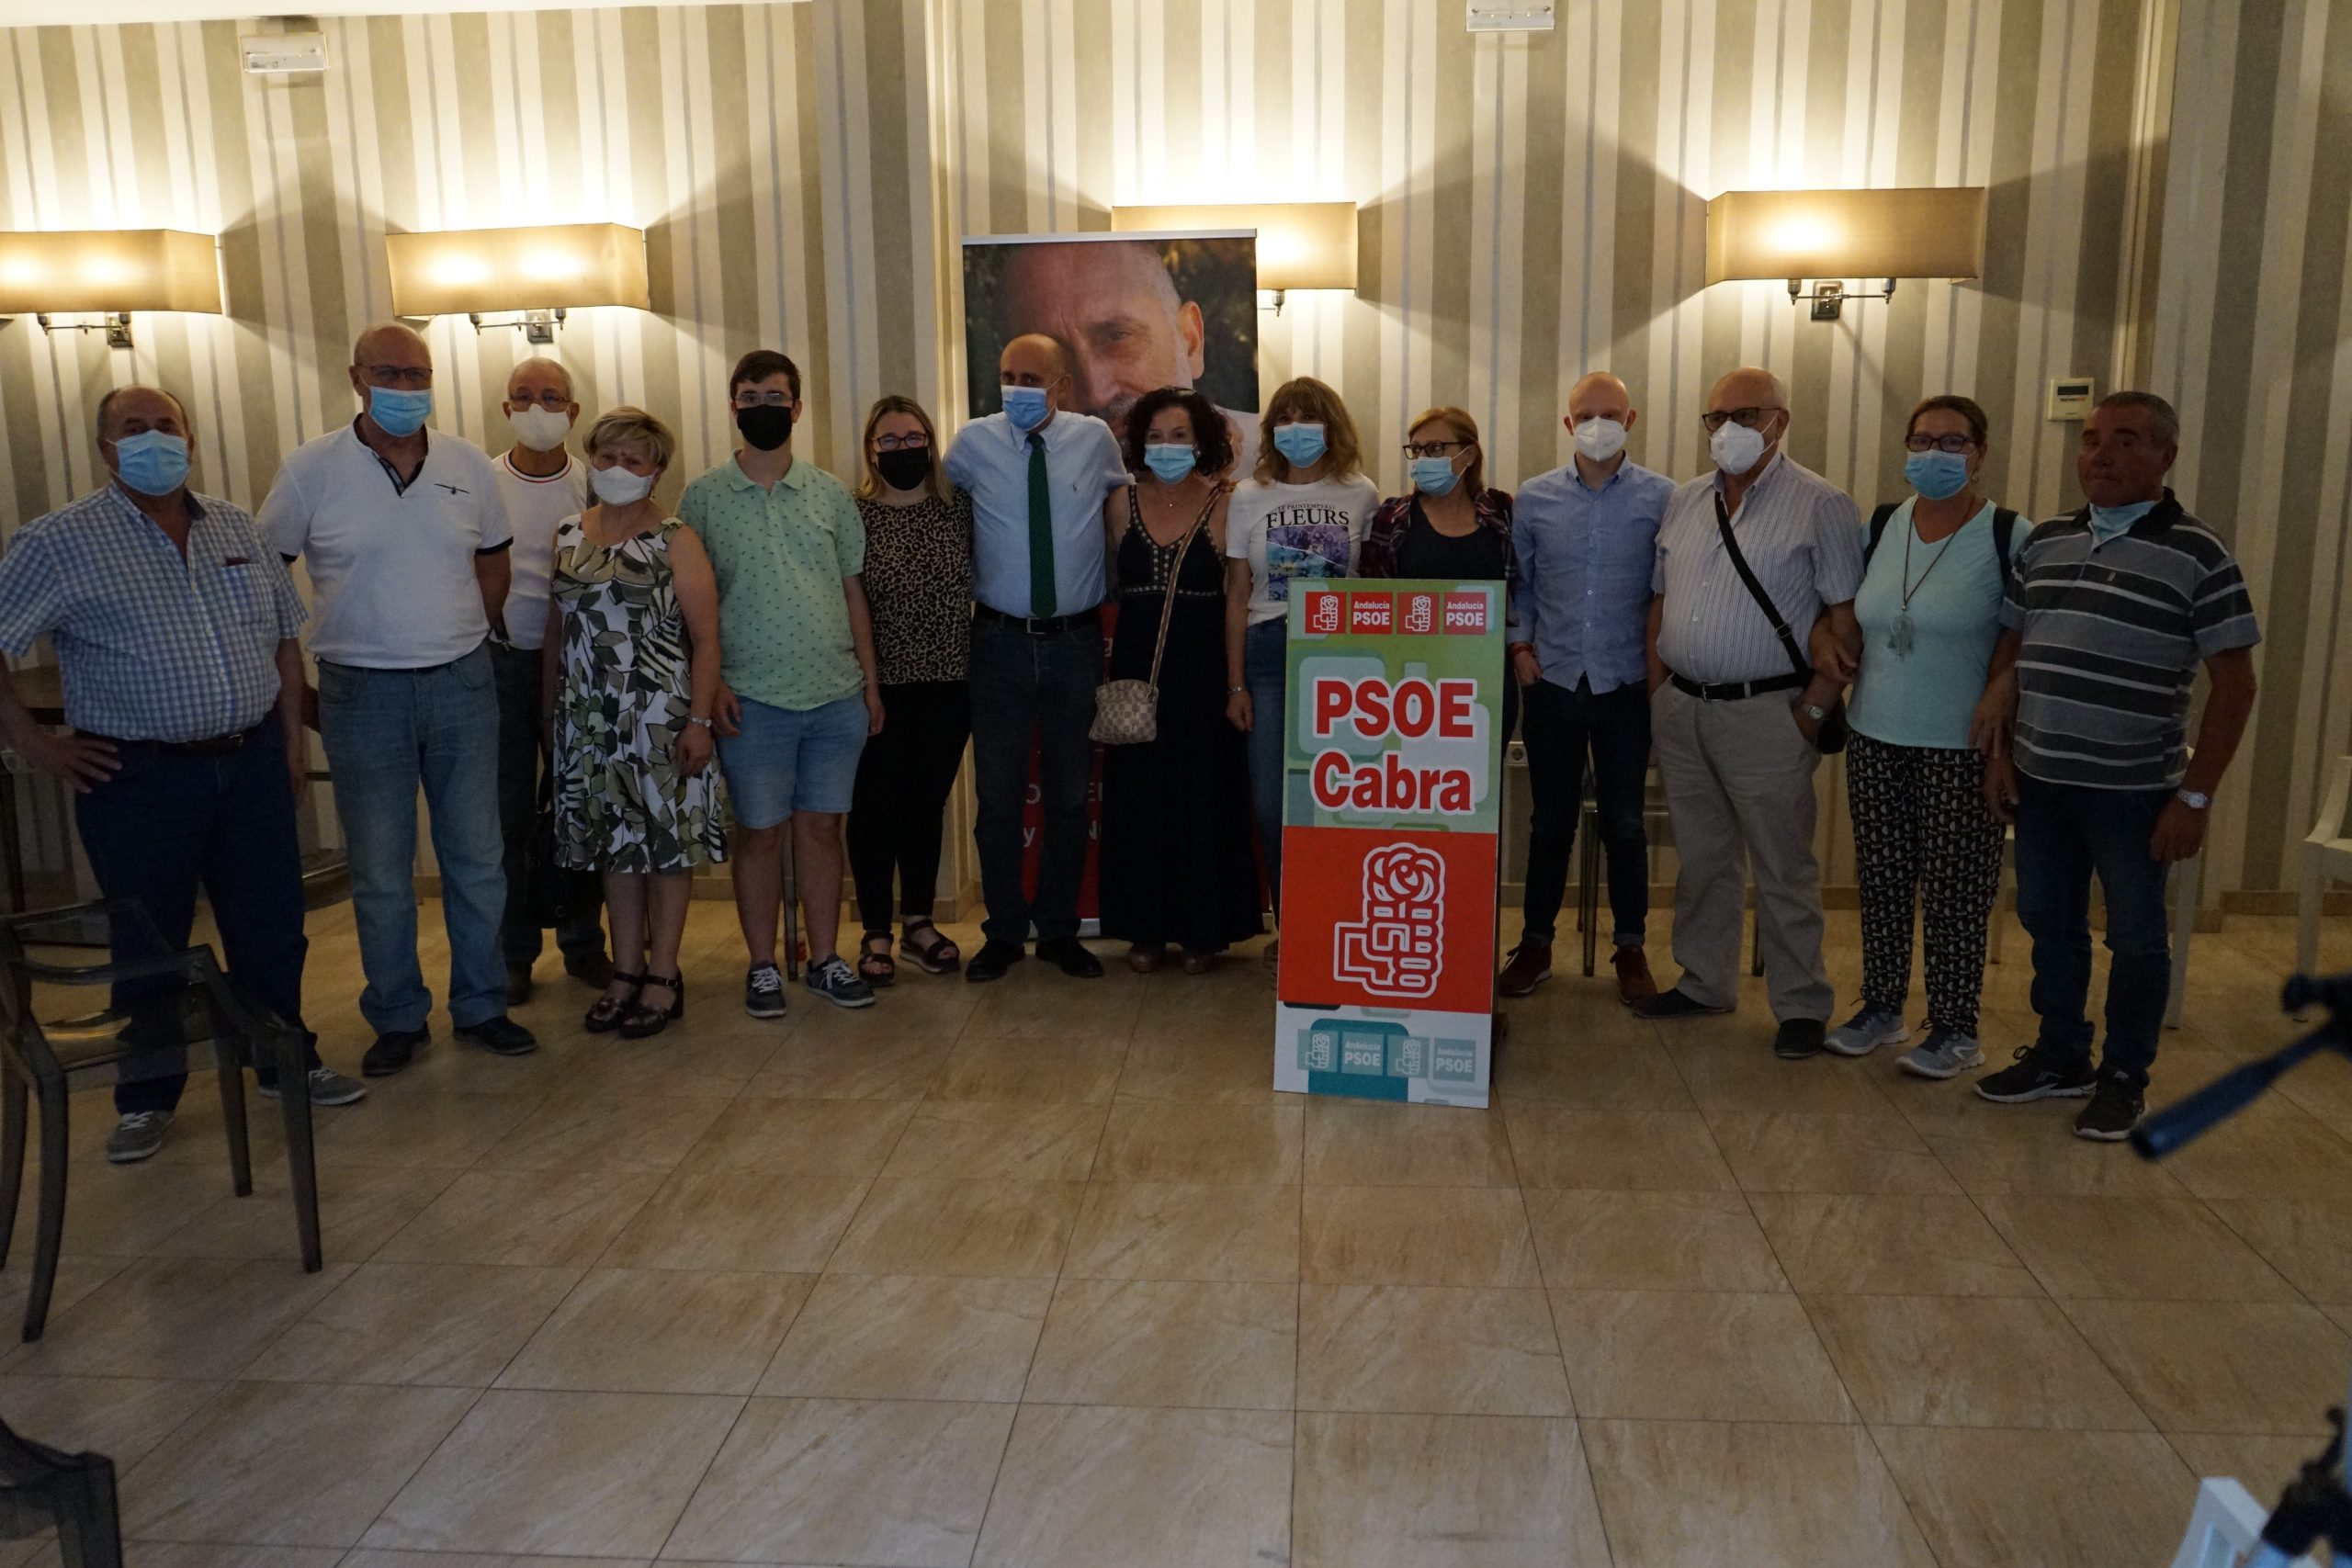 Andalucía Socialista-Bases en Marcha